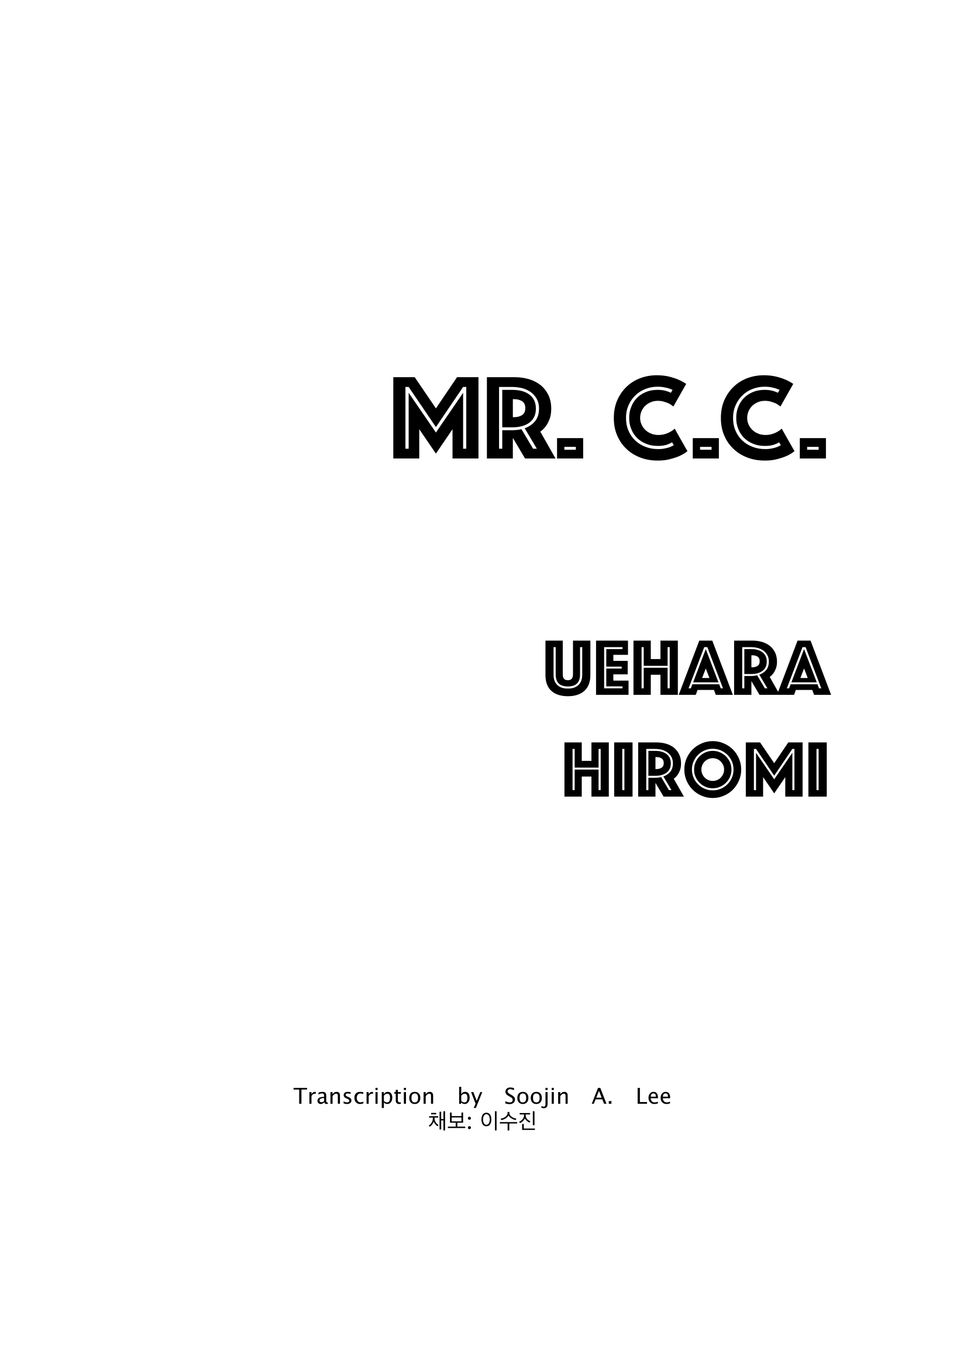 Hiromi Uehara - Mr. C.C. by Soojin Lee